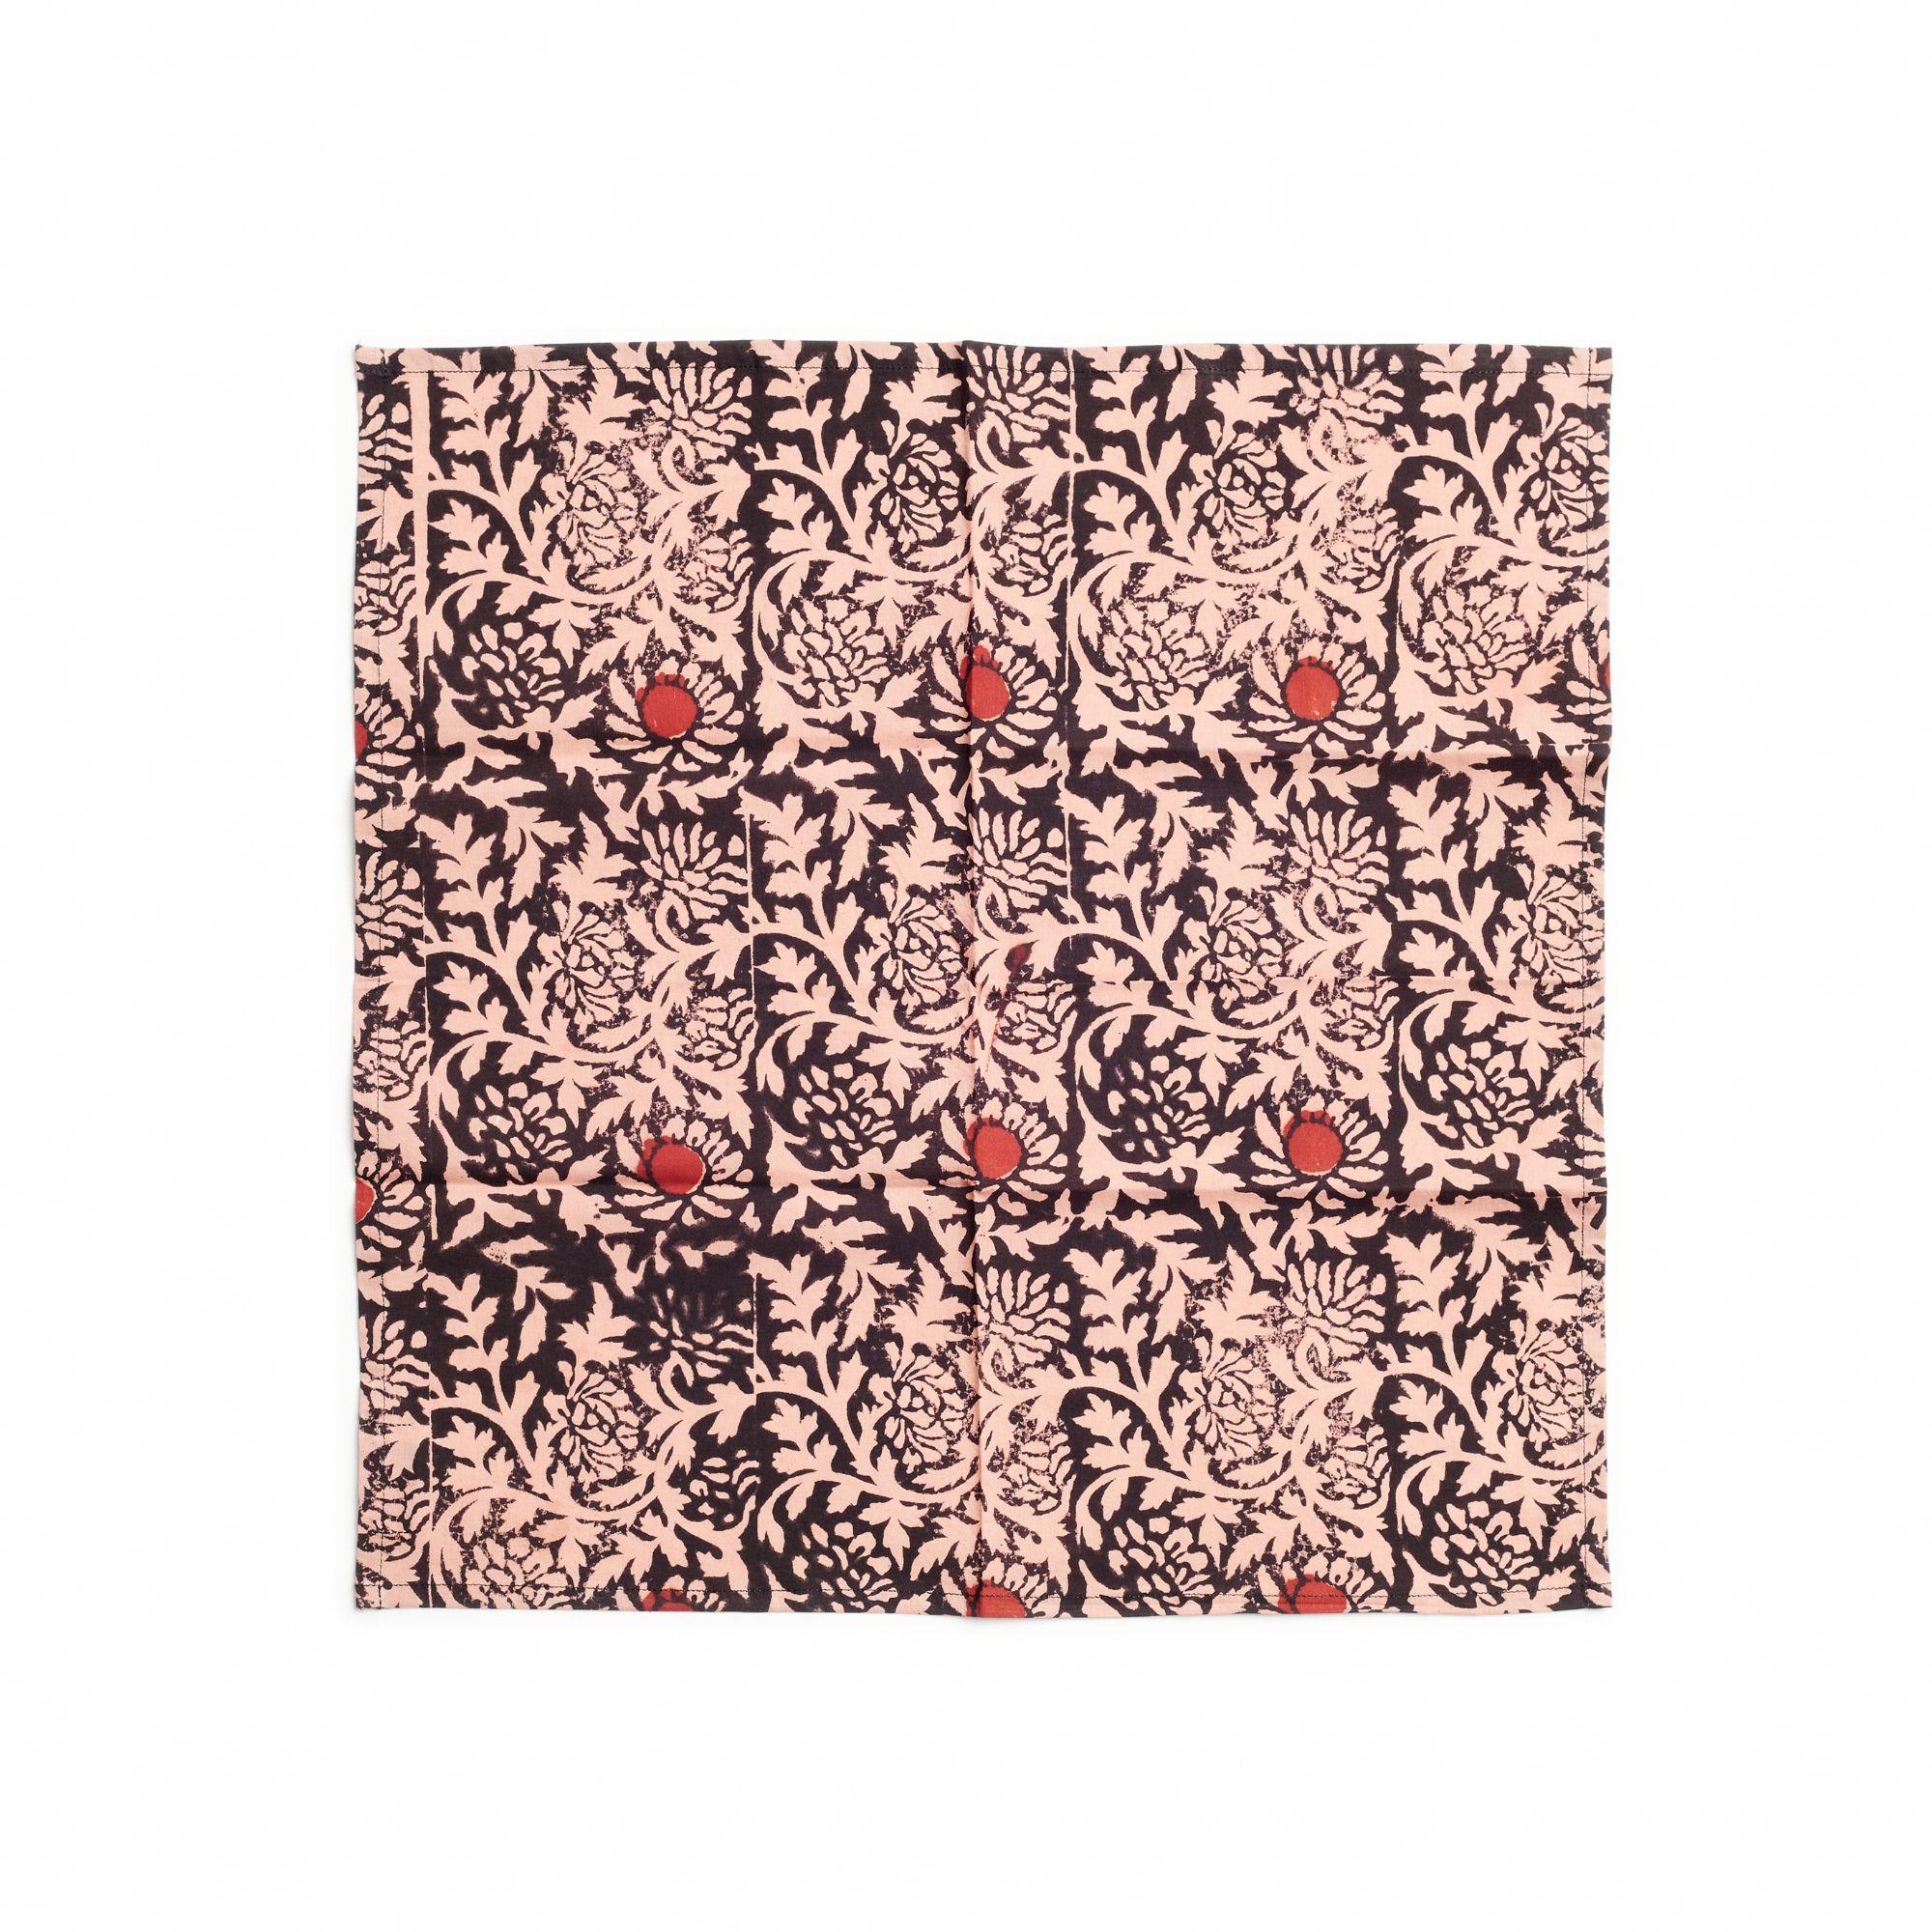 La serviette de table florale Hummas est une serviette artisanale unique. Créée de manière artistique et éthique par des artisans en Inde selon la technique de l'impression à la planche, en utilisant uniquement des teintures naturelles pures. Il